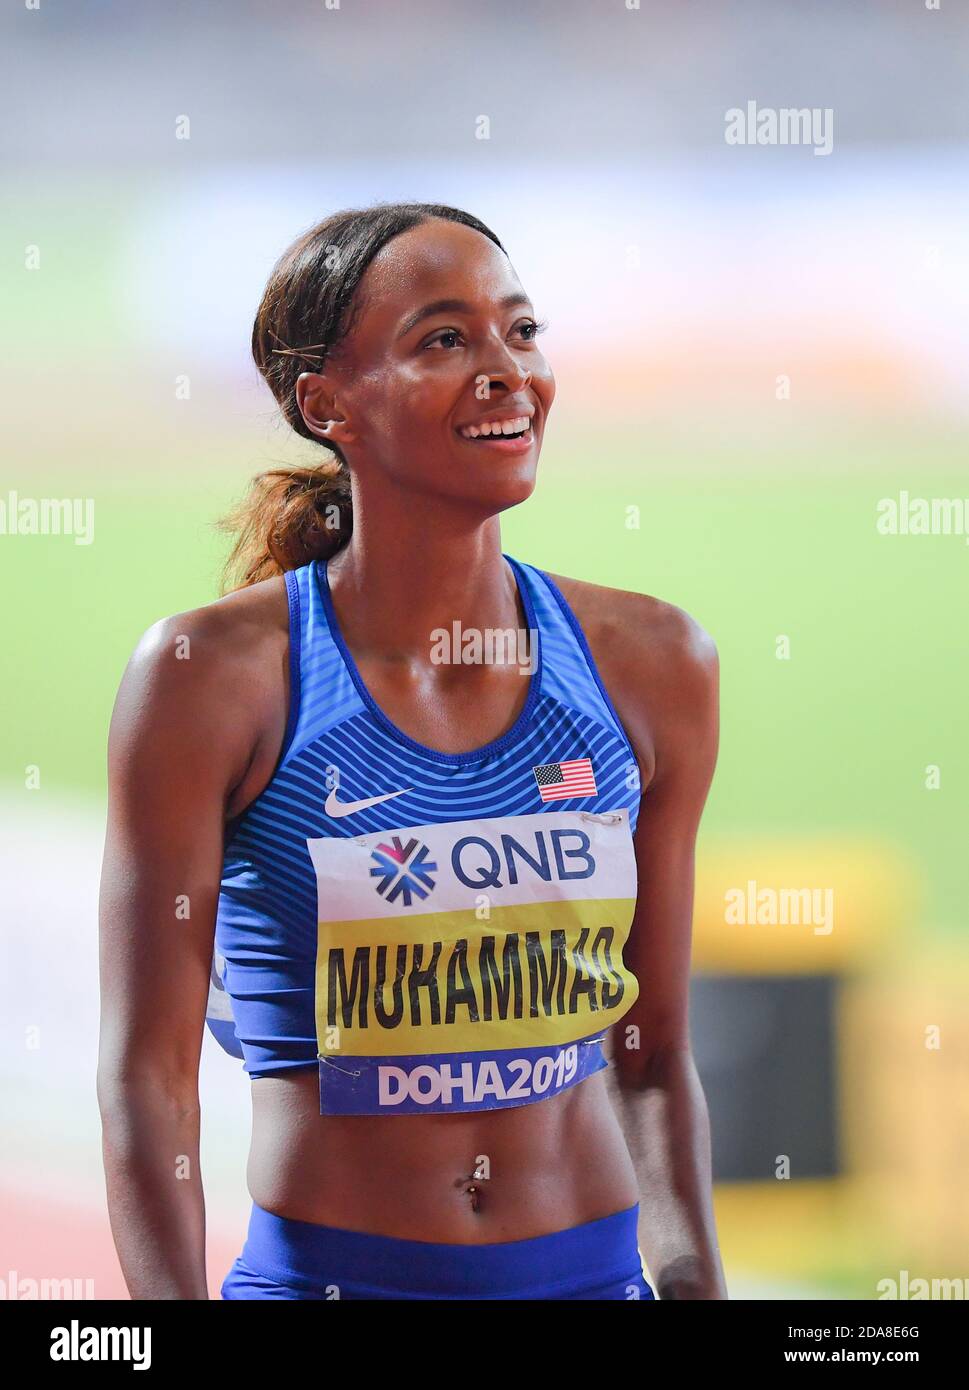 Dalilah Muhammad (USA) rompe il record del mondo dei 400 metri a ostacoli  in un tempo di 52.16. IAAF mondiale di atletica, Doha 2019 Foto stock -  Alamy